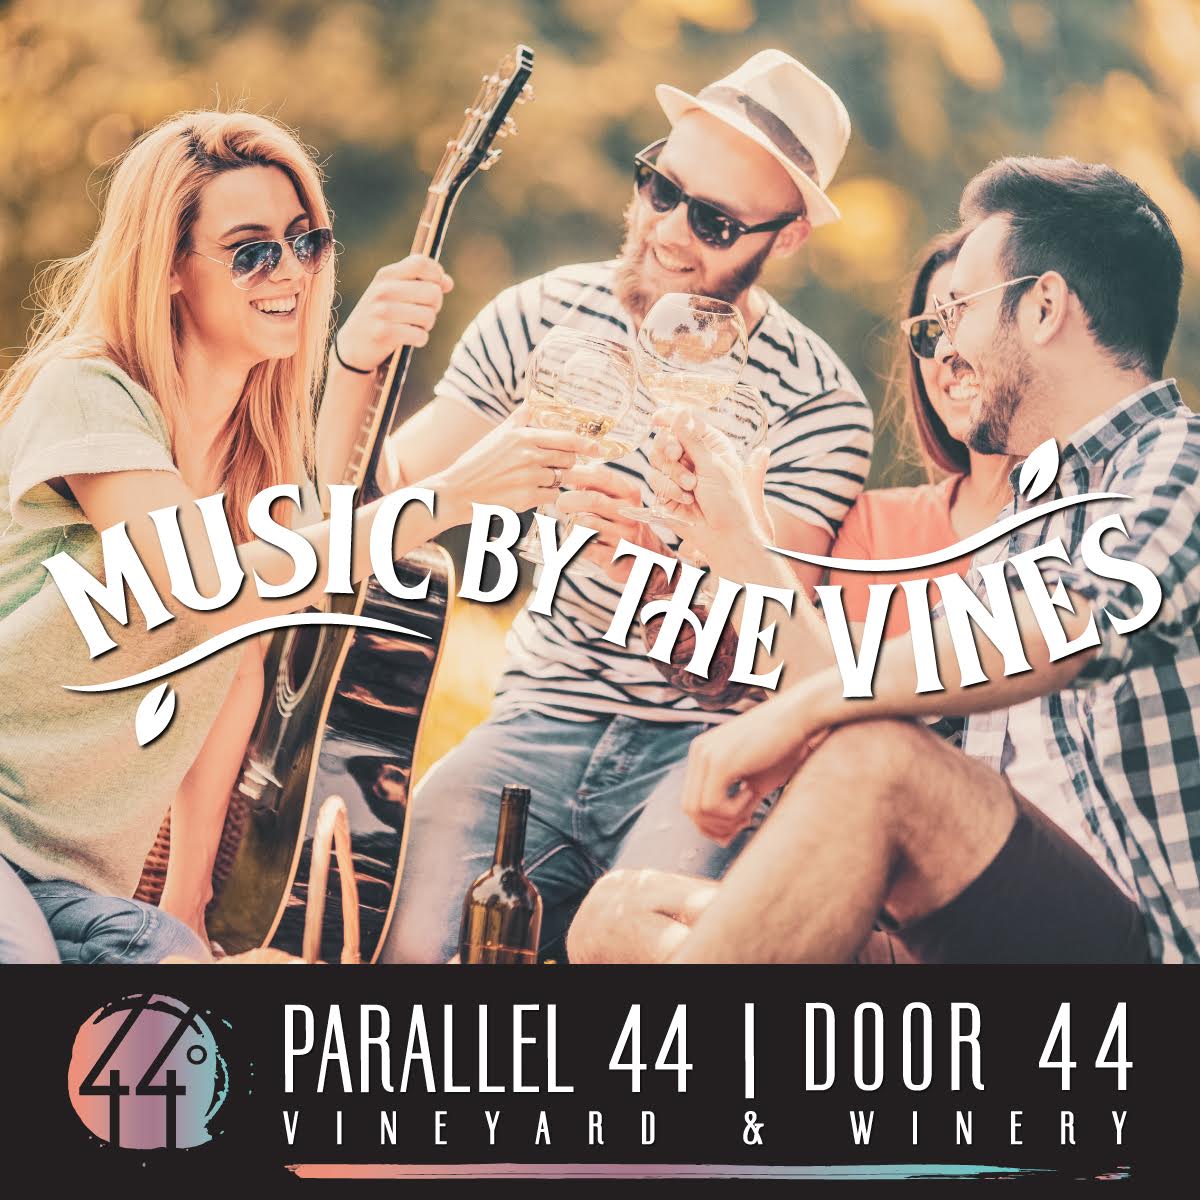 Music by the Vines - Door44 | Parallel 44 | Live Music NE Wisconsin_alt